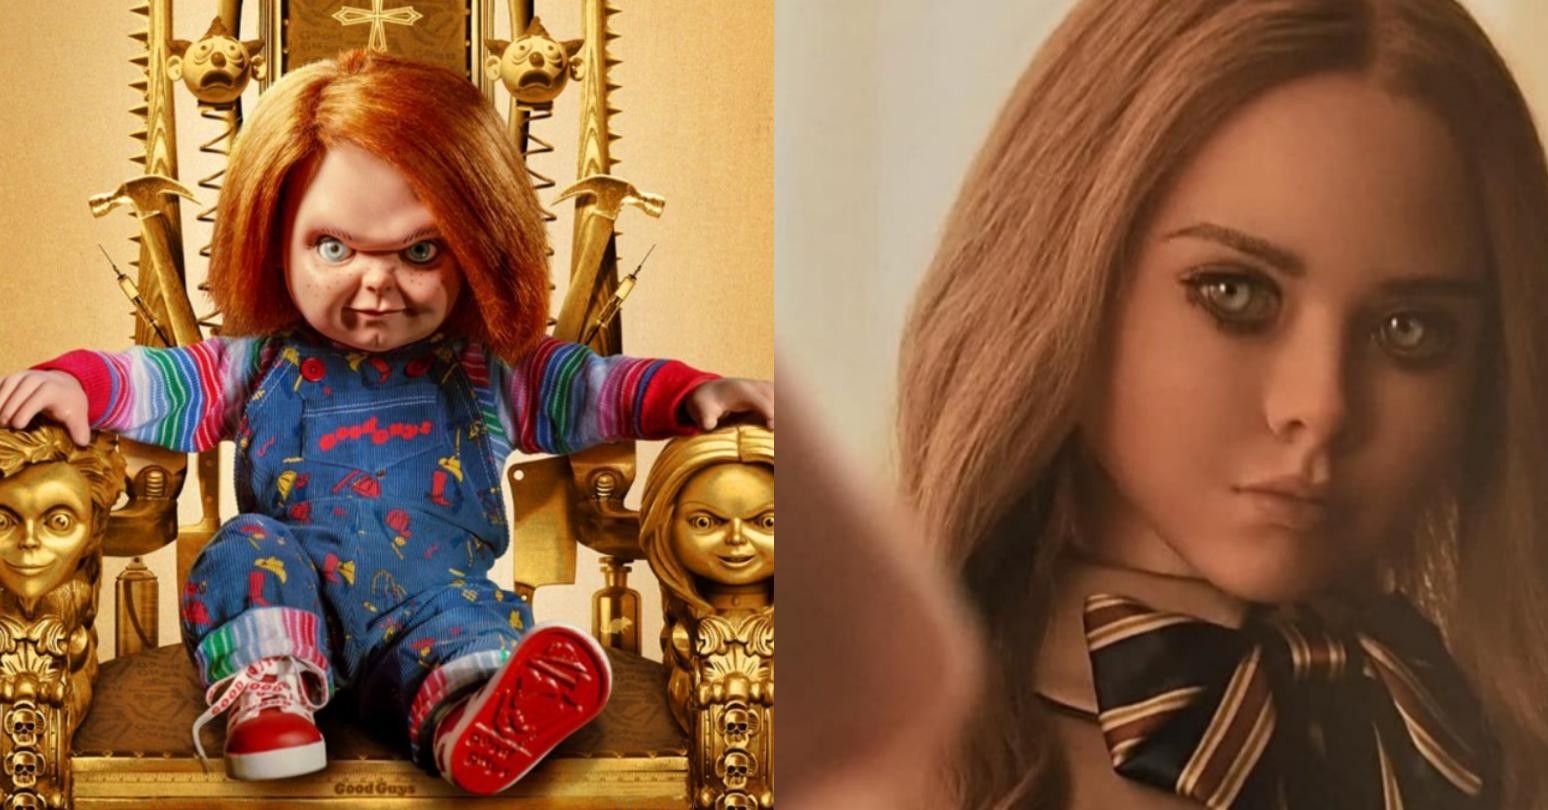 Chucky, de 'Brinquedo Assassino', chama boneca de novo filme de terror para  a treta e incendeia redes sociais - Monet